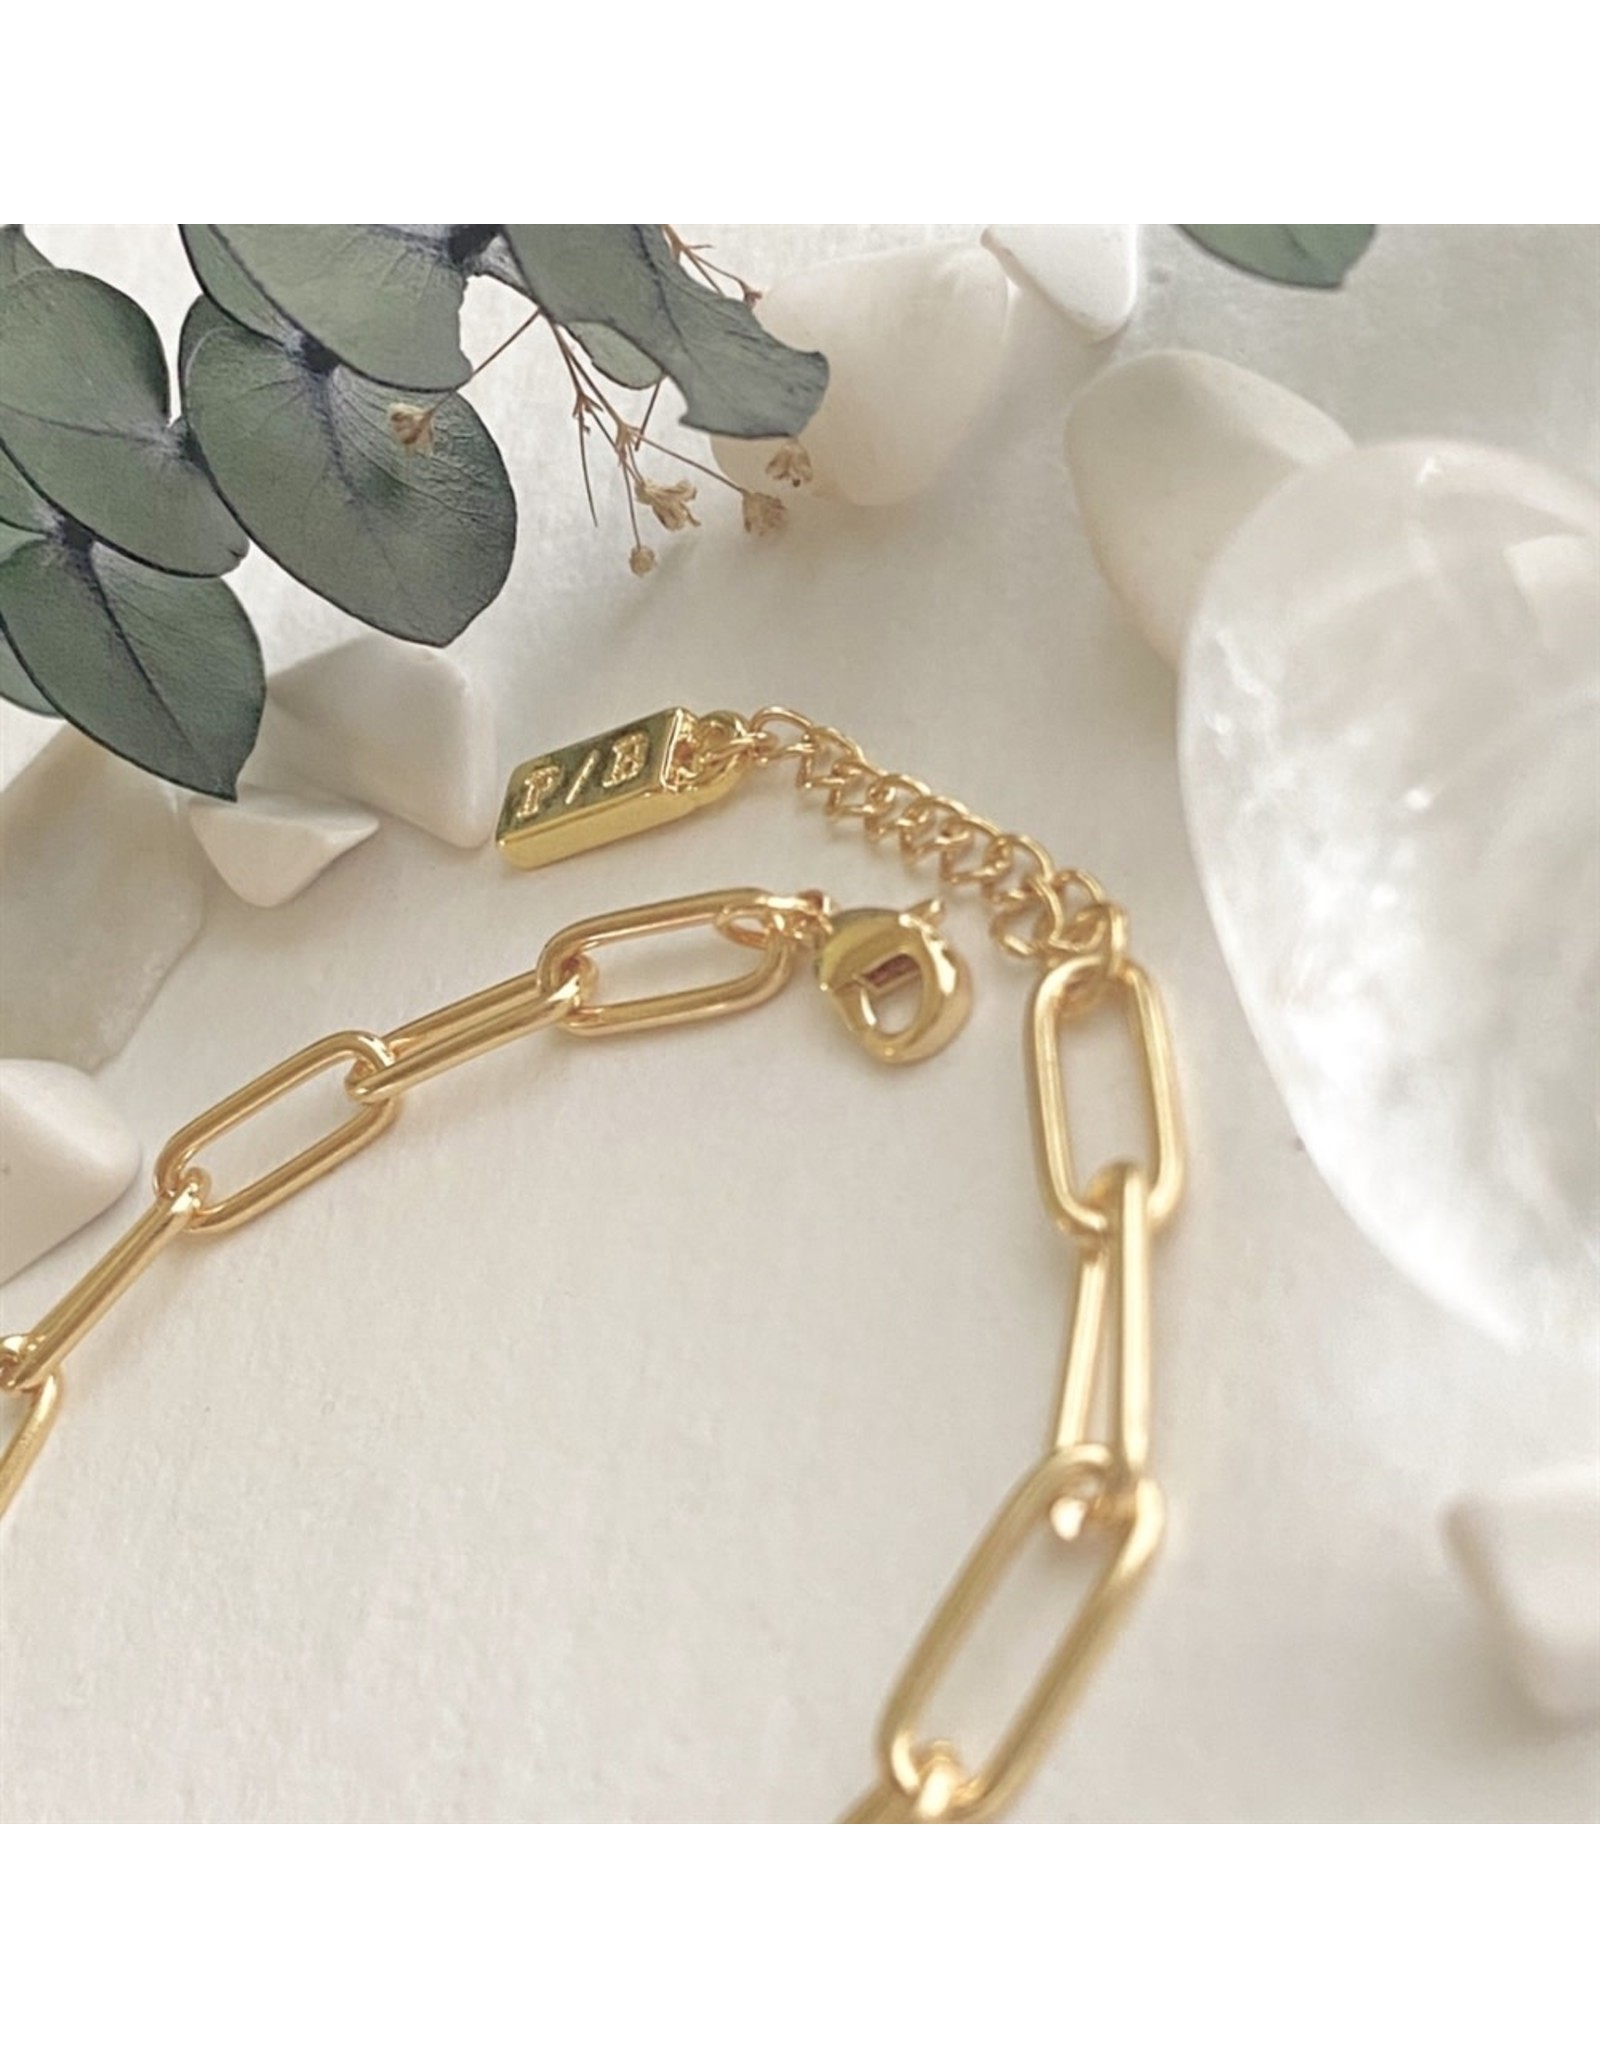 Pika & Bear Pika & Bear - Montmartre Paperclip Chain Bracelet in Gold